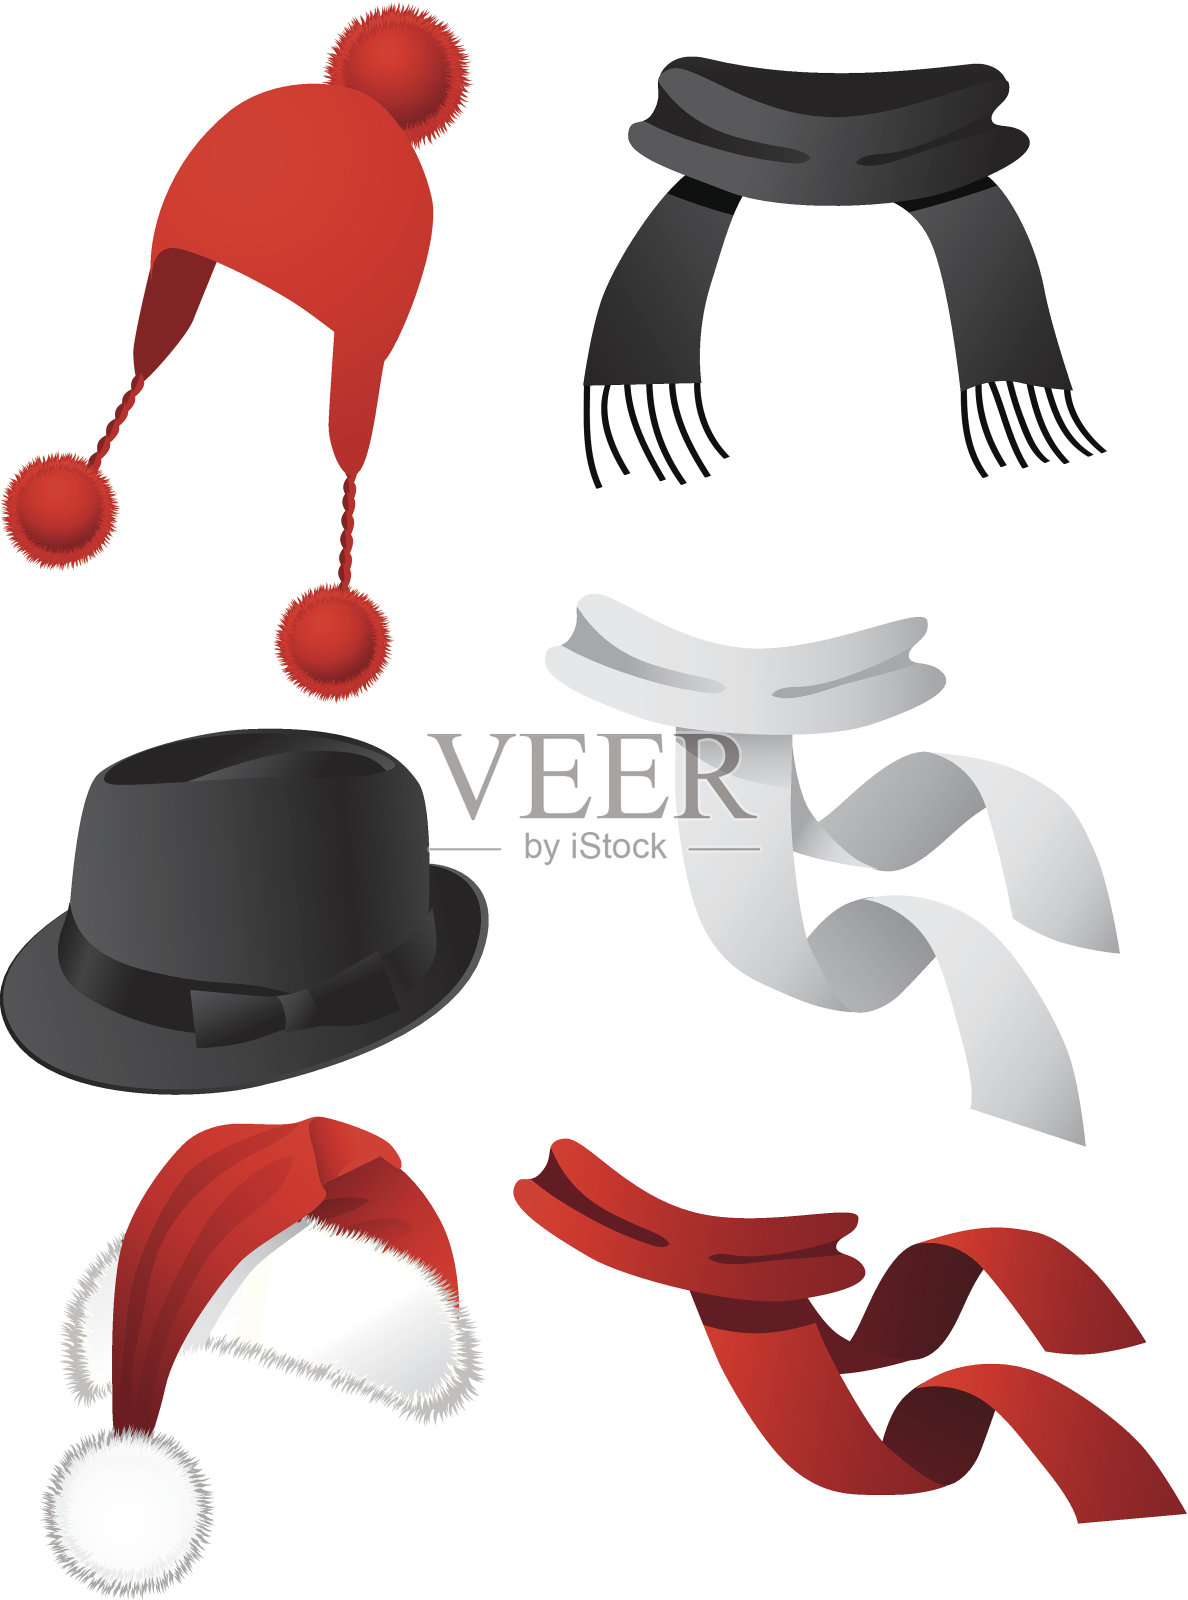 帽子和围巾2插画图片素材